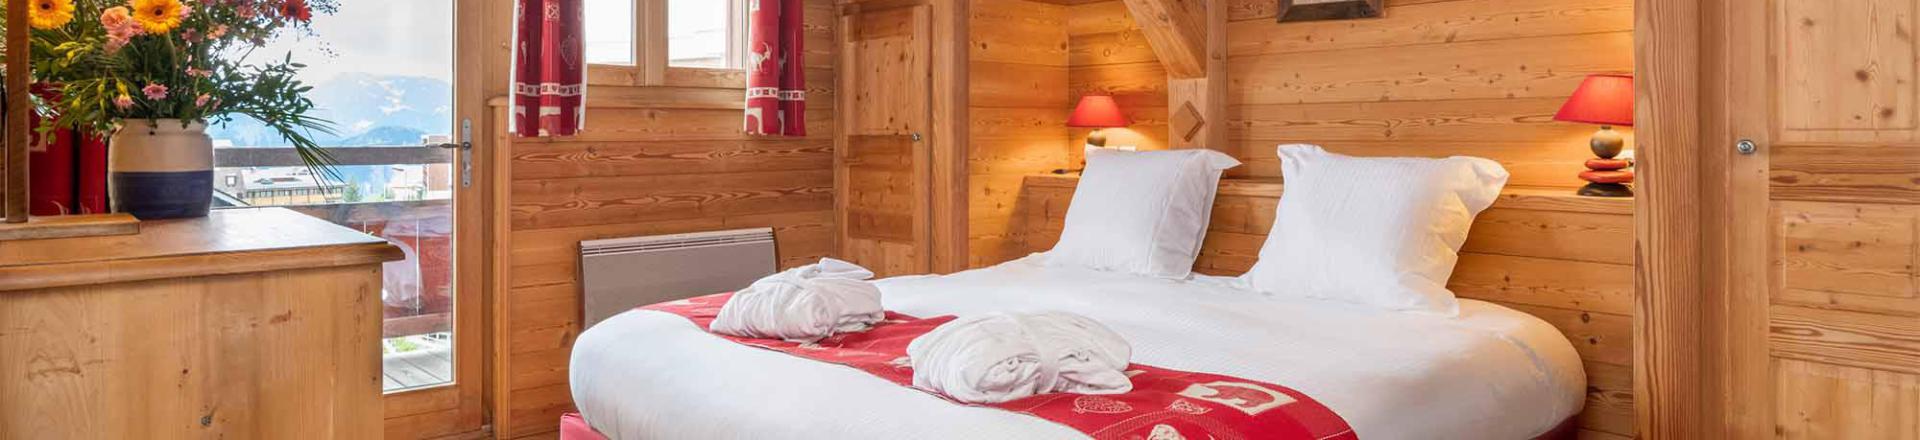 Rent in ski resort Chalet Marmotte - Alpe d'Huez - Bedroom